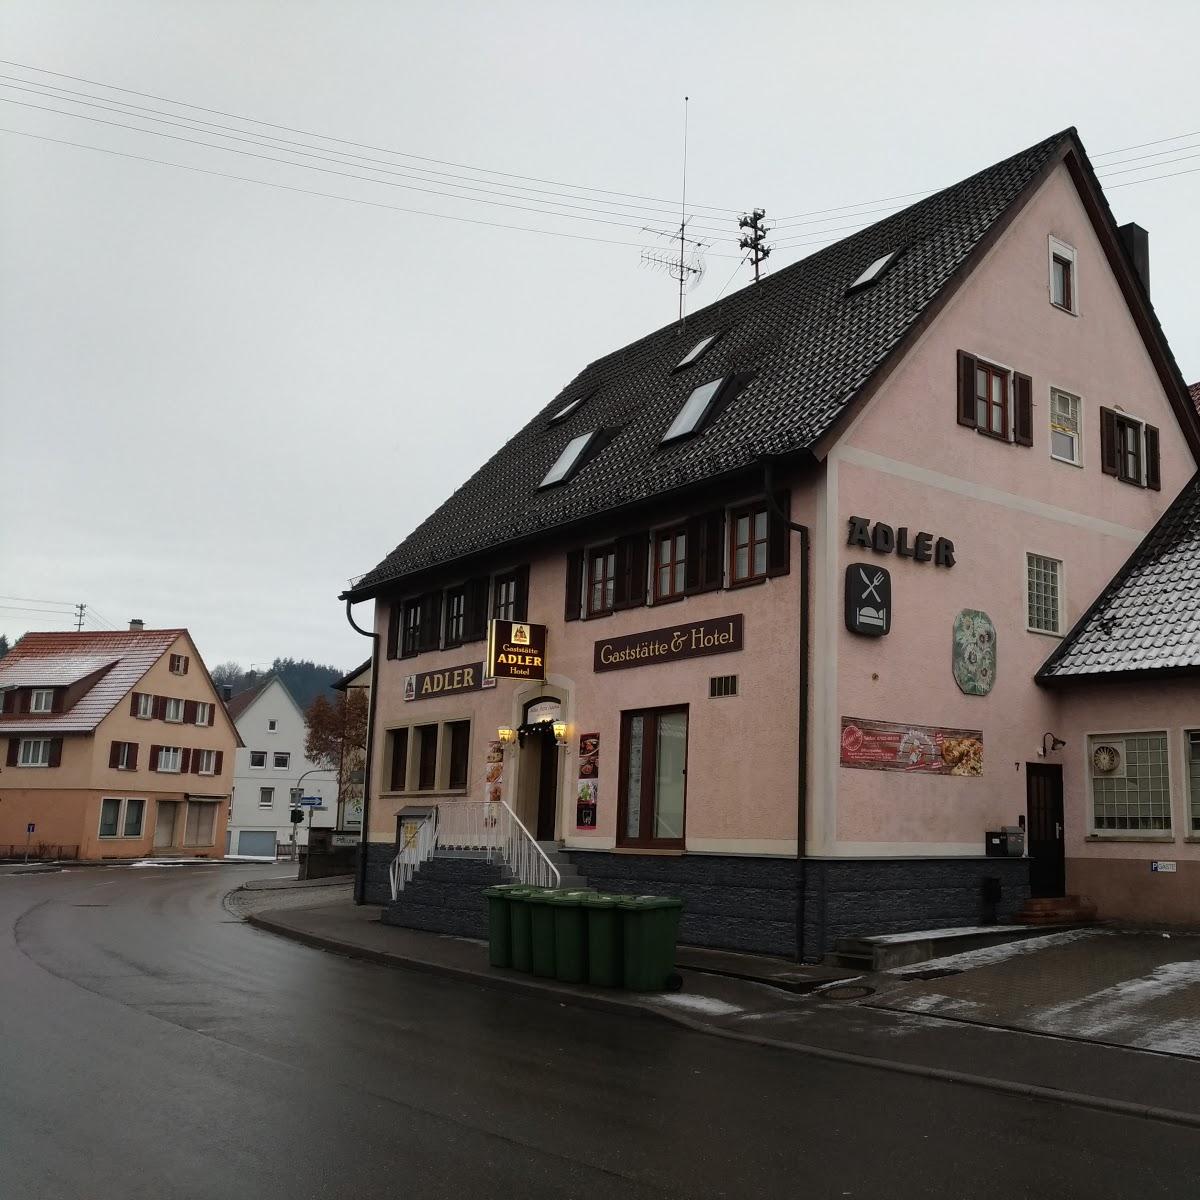 Restaurant "Gasthaus & Hotel Adler  - günstig übernachten" in Heimsheim